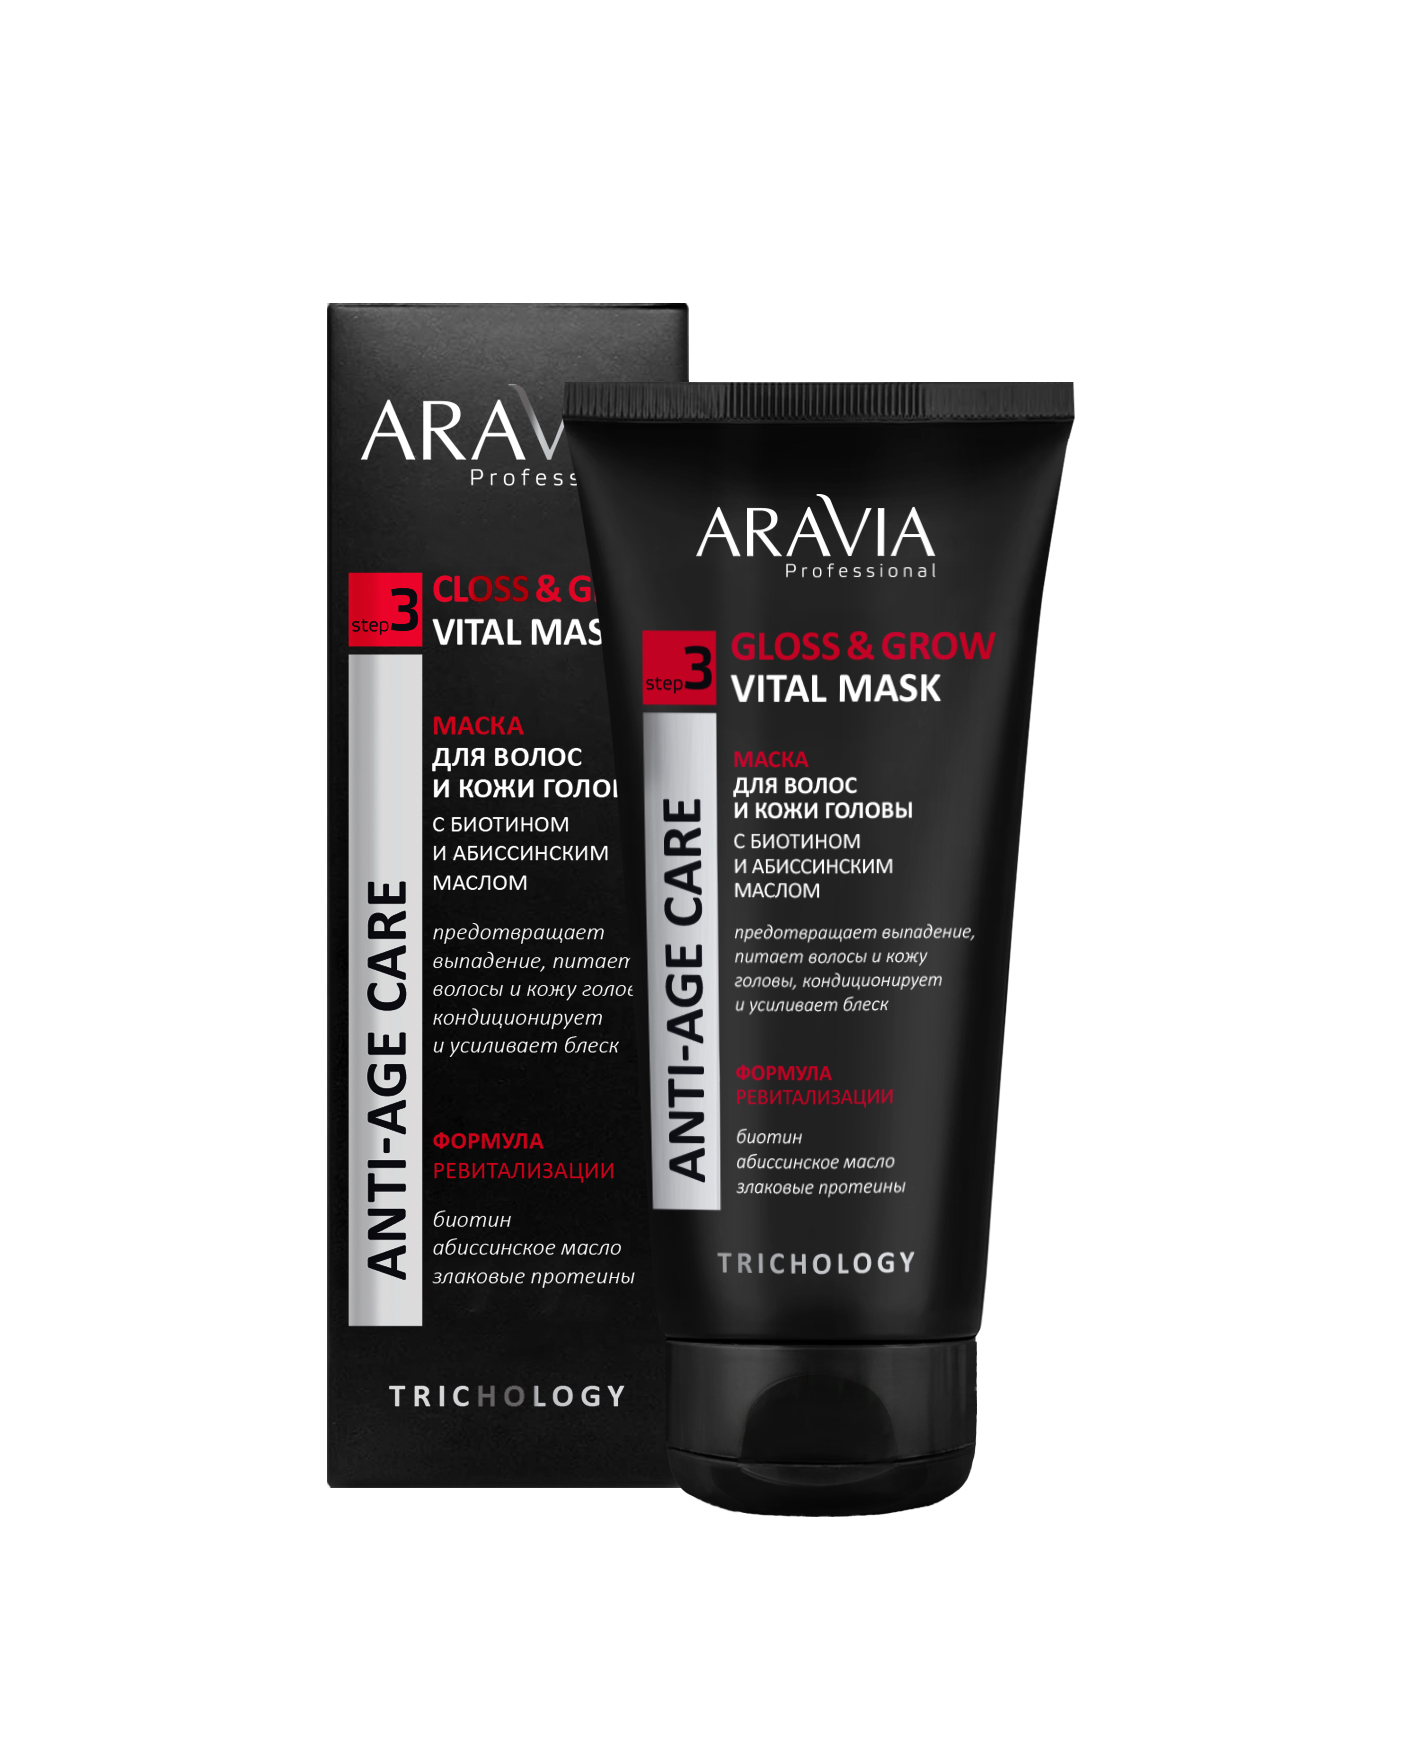 ARAVIA Professional Маска для волос и кожи головы с биотином и абиссинским маслом, 200мл